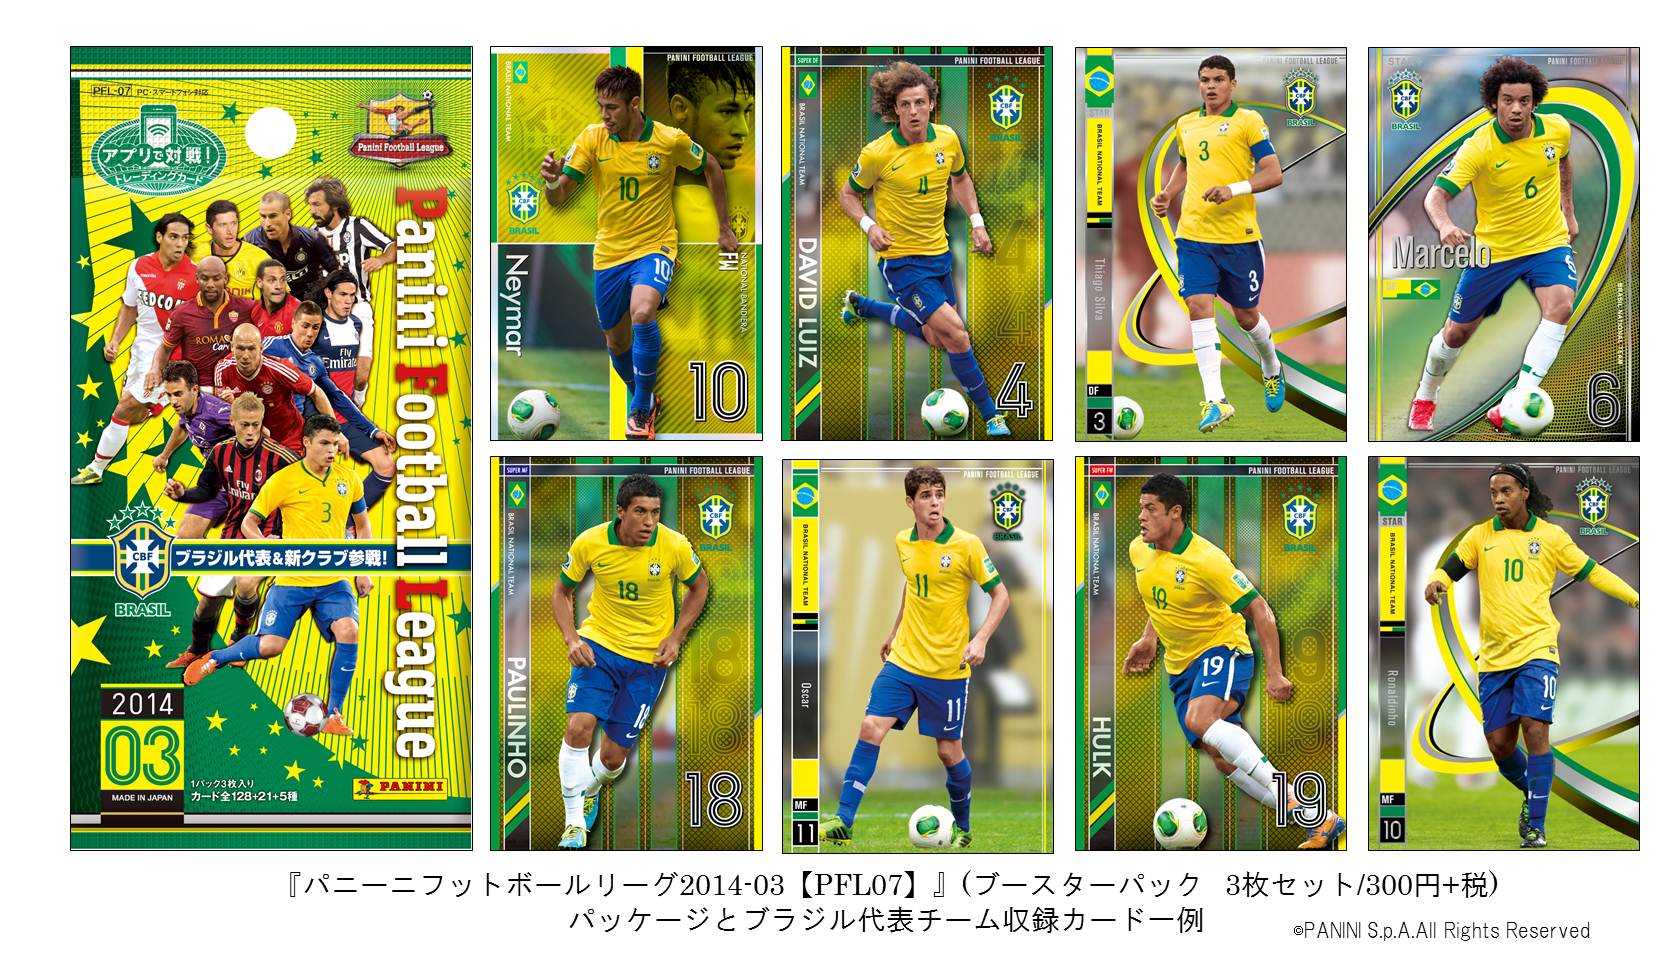 アプリで戦うワールドサッカーカードゲーム パニーニフットボールリーグ 14 03 Pfl07 に サッカー王国 ブラジル代表 参戦 株式会社バンダイのプレスリリース